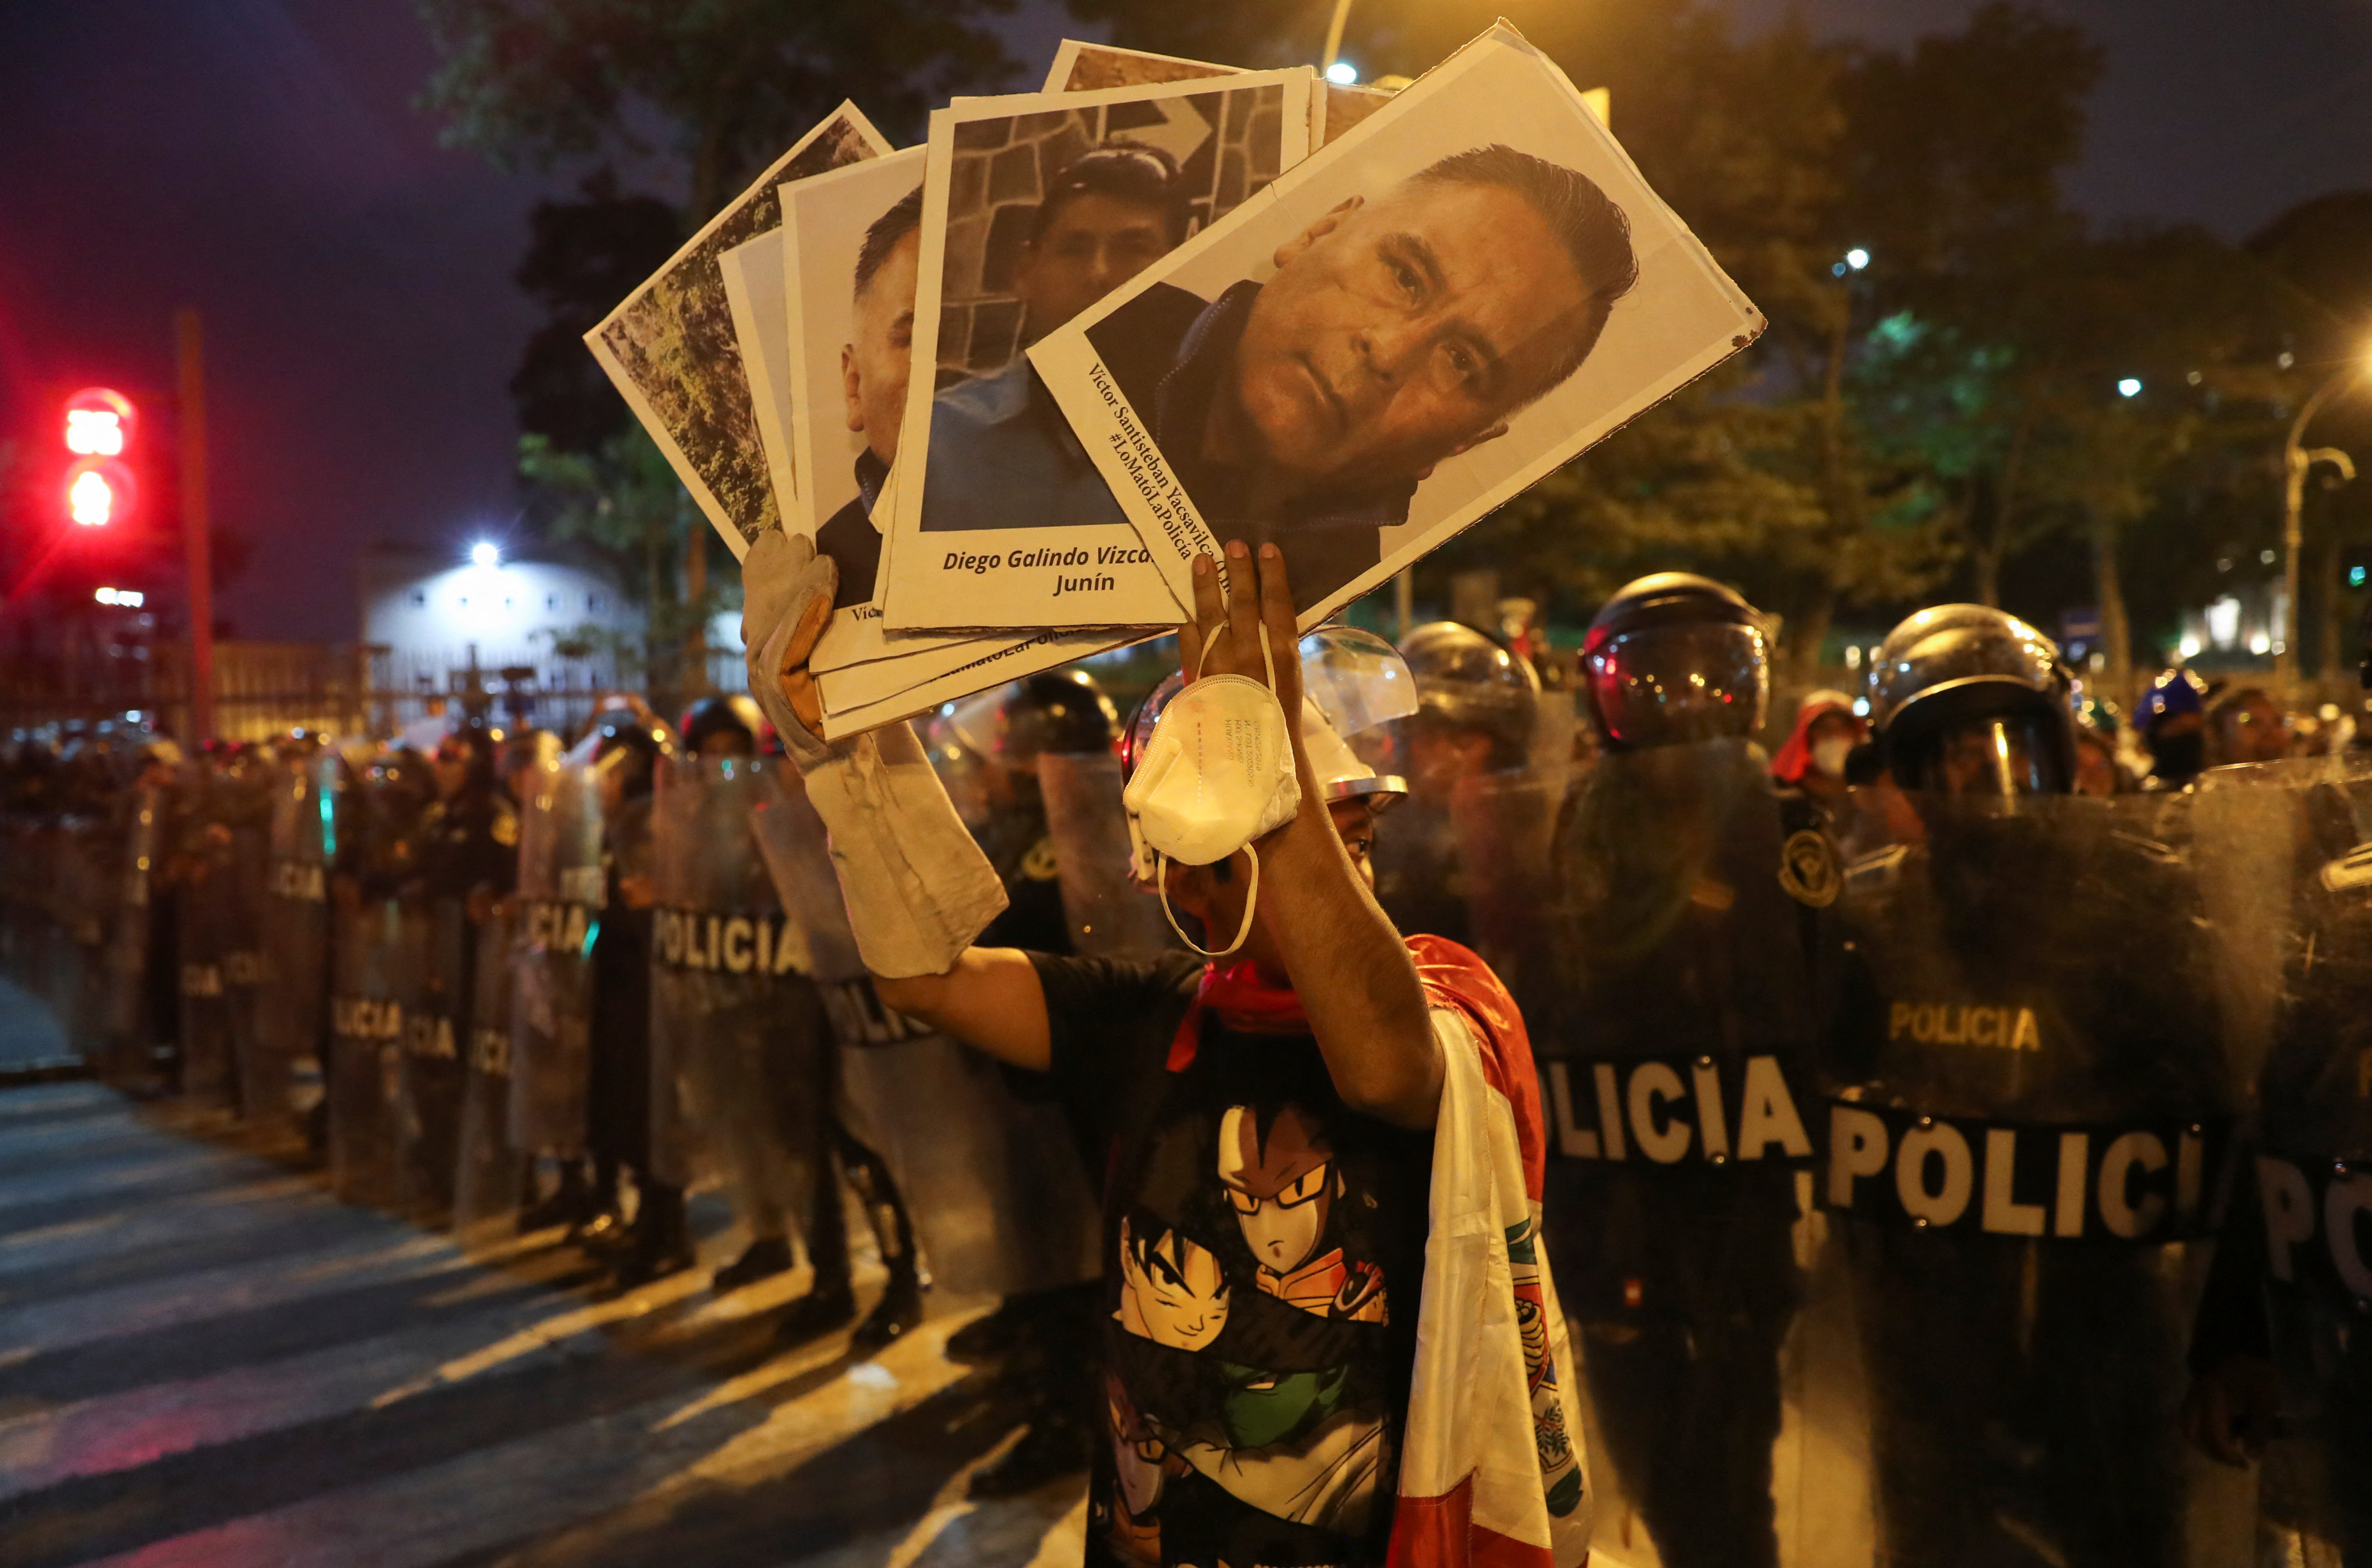 Un manifestante sostiene pancartas frente a policías durante una protesta en Lima, el 31 de enero. (REUTERS/Sebastian Castaneda)